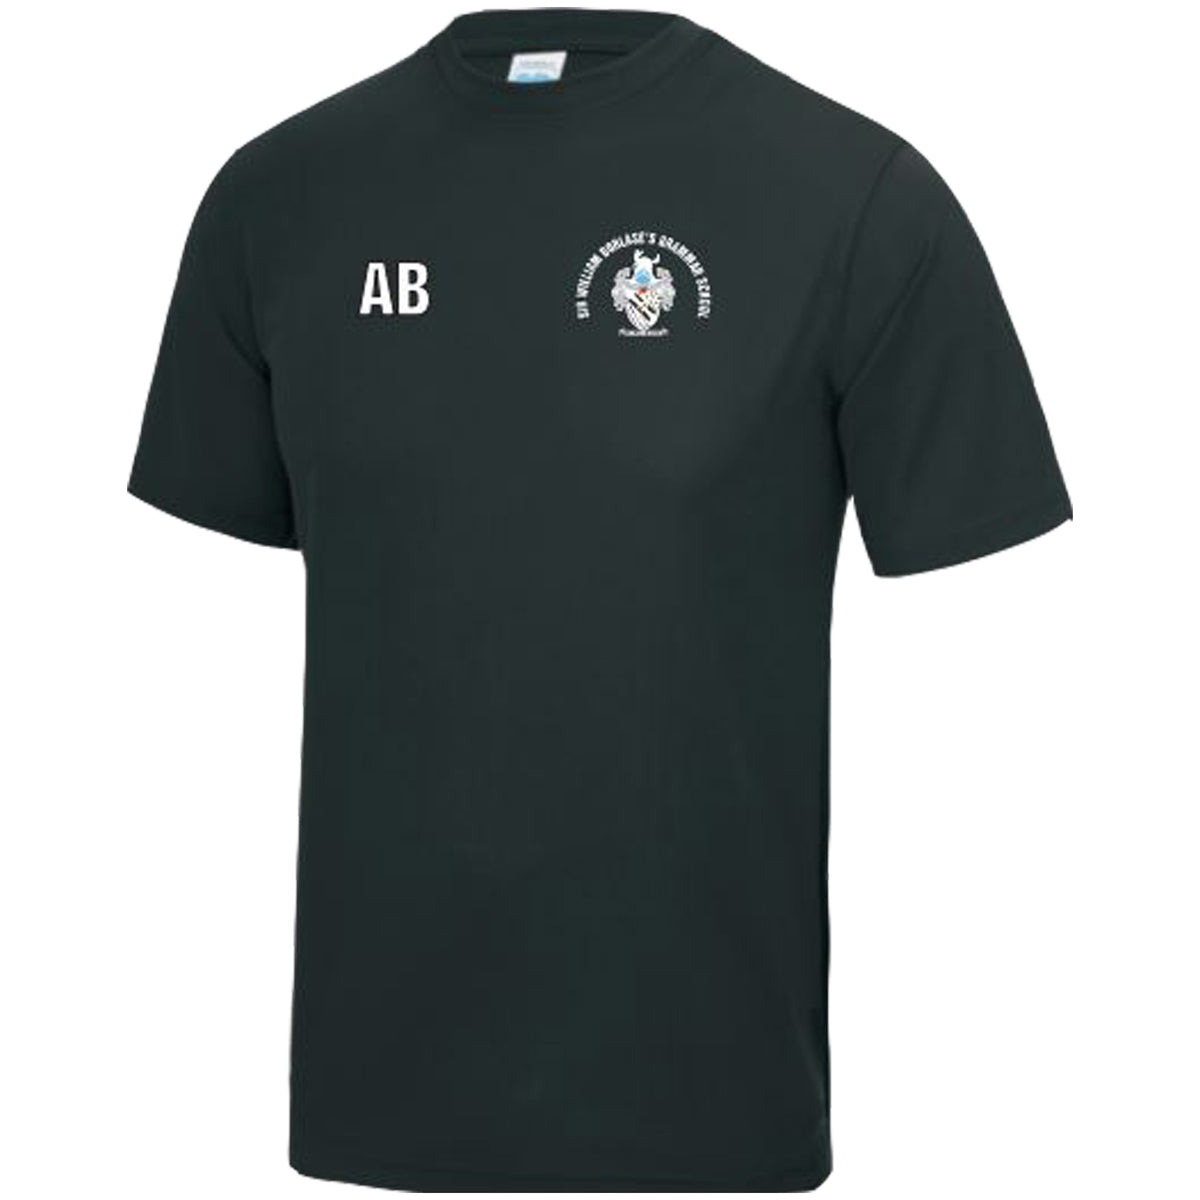 Sir William Borlase Grammar School Hockey T-Shirt Yr 7-9